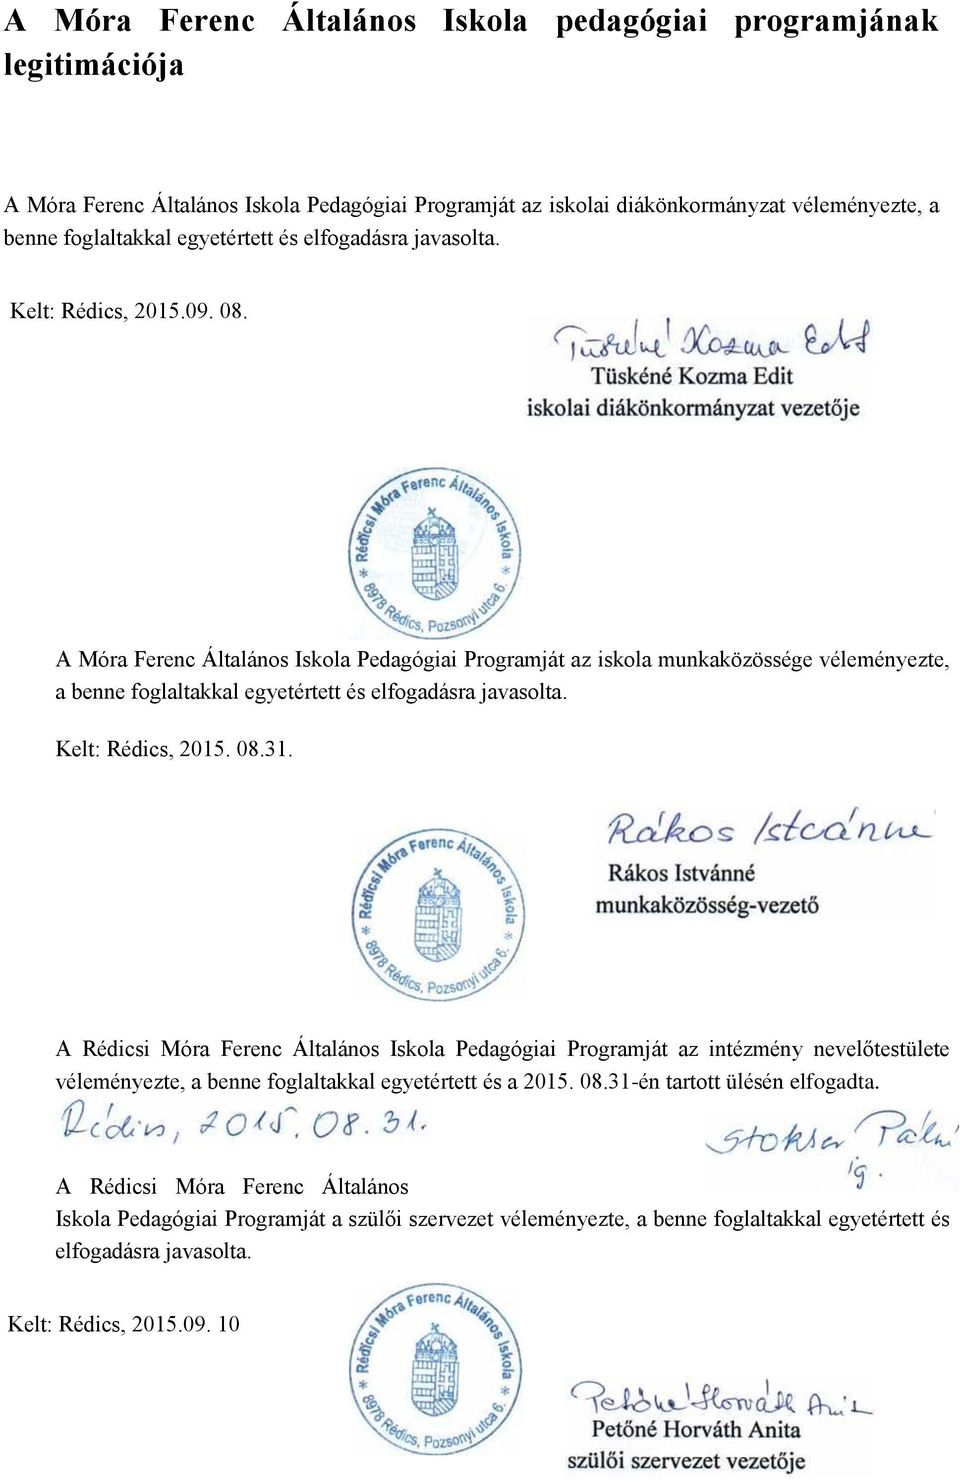 A Móra Ferenc Általános Iskola Pedagógiai Programját az iskola munkaközössége véleményezte, a benne foglaltakkal egyetértett és elfogadásra javasolta. Kelt: Rédics, 2015. 08.31.